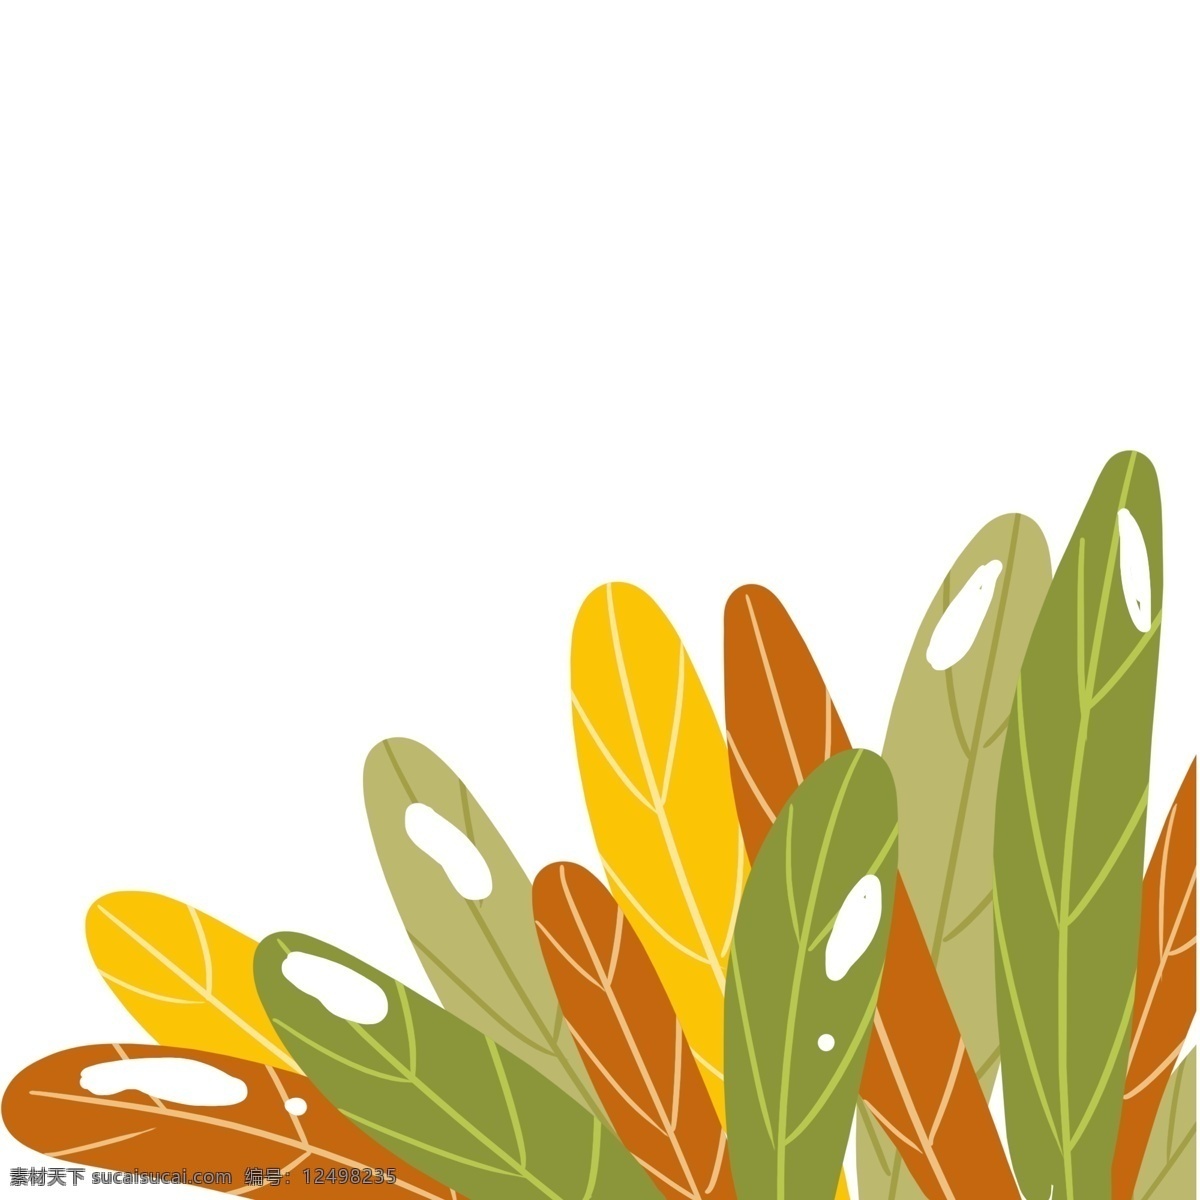 草丛 树叶 装饰 图案 植物 叶子 手绘 绘画 卡通 简约 小清新 彩色